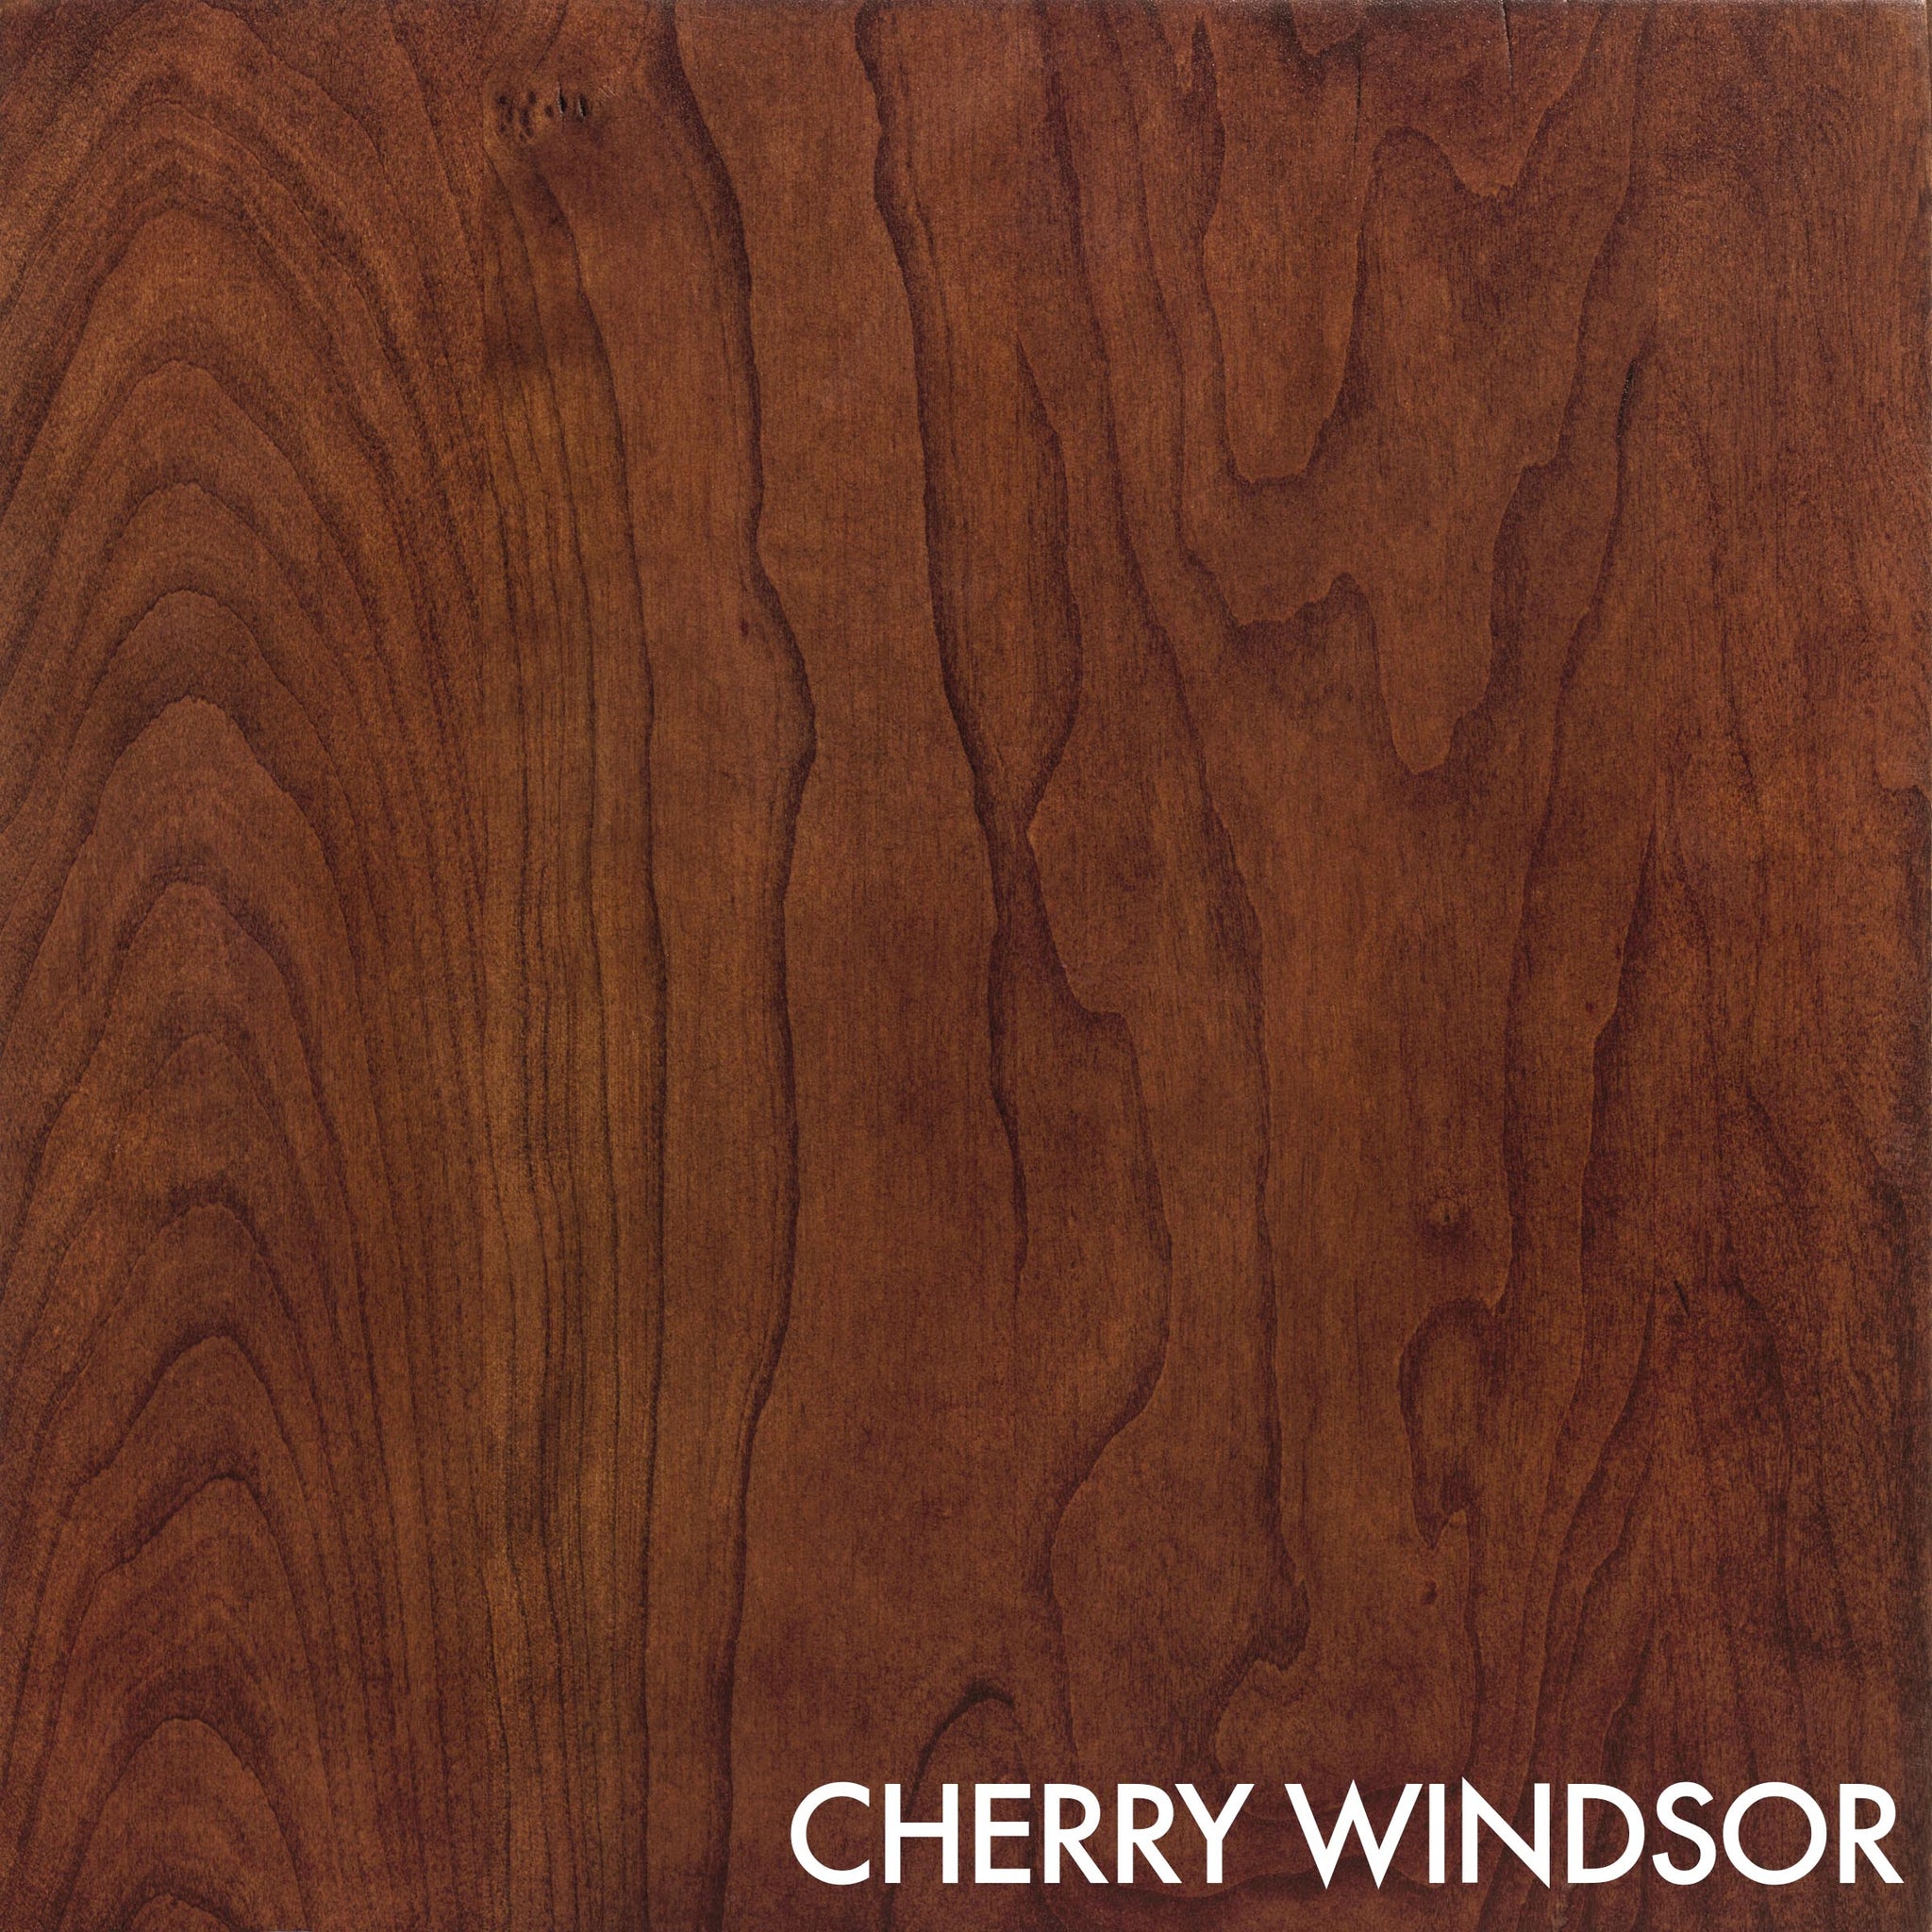 Sumeror Wood Finial-Cherry-Oak-Maple-Walnut-Mahogany-Bed Post #62 (Cherry)